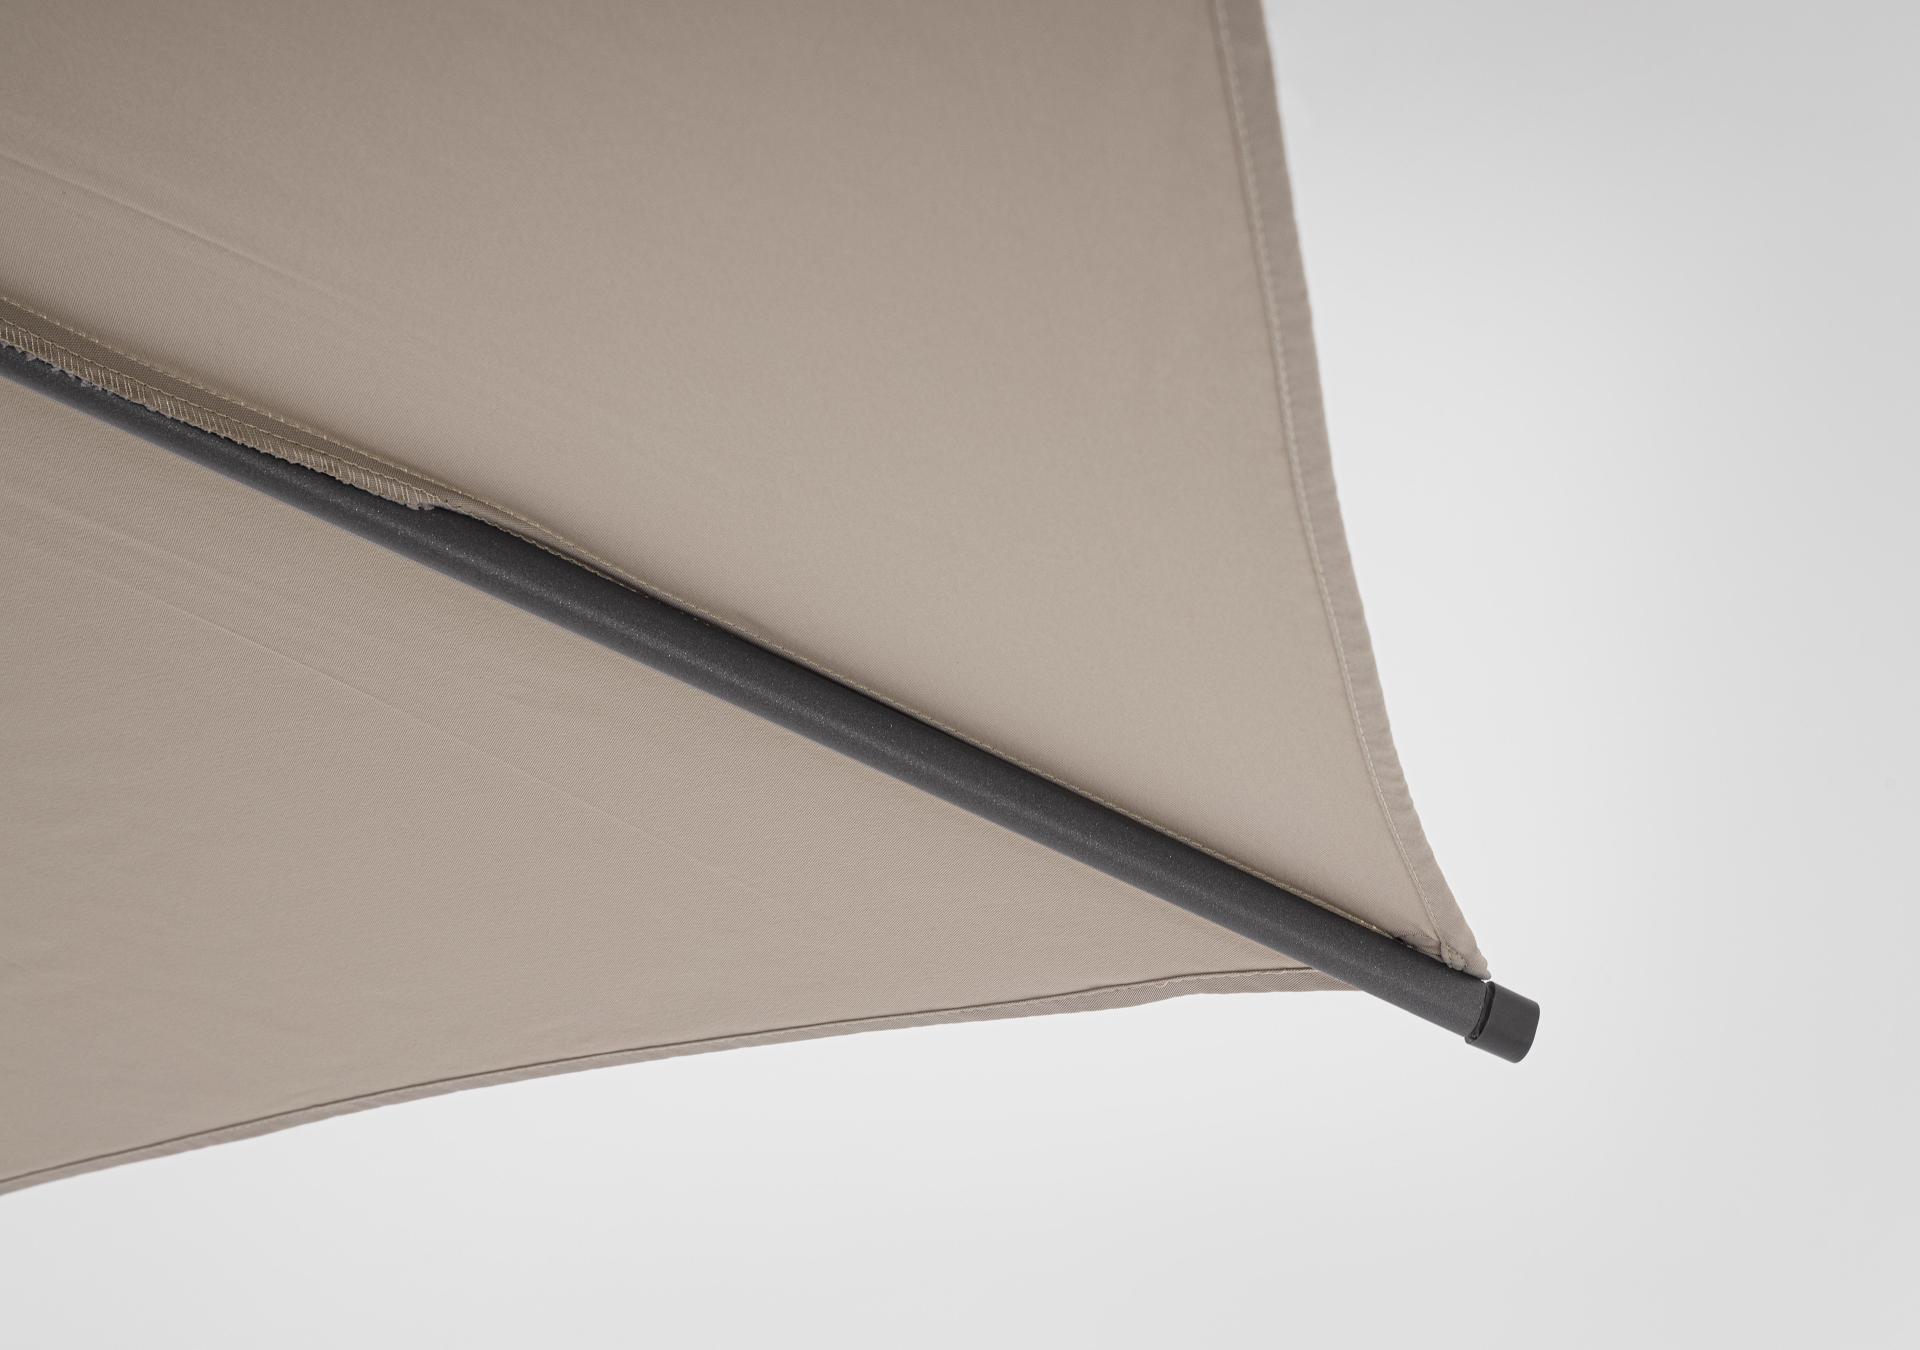 Der Sonnenschirm Samba überzeugt mit seinem klassischen Design. Gefertigt wurde er aus einer Polyester Plane, welche einen Beigen Farbton besitzt. Das Gestell ist aus Metall und hat eine Anthrazit Farbe. Der Sonnenschirm verfügt über einen Durchmesser von